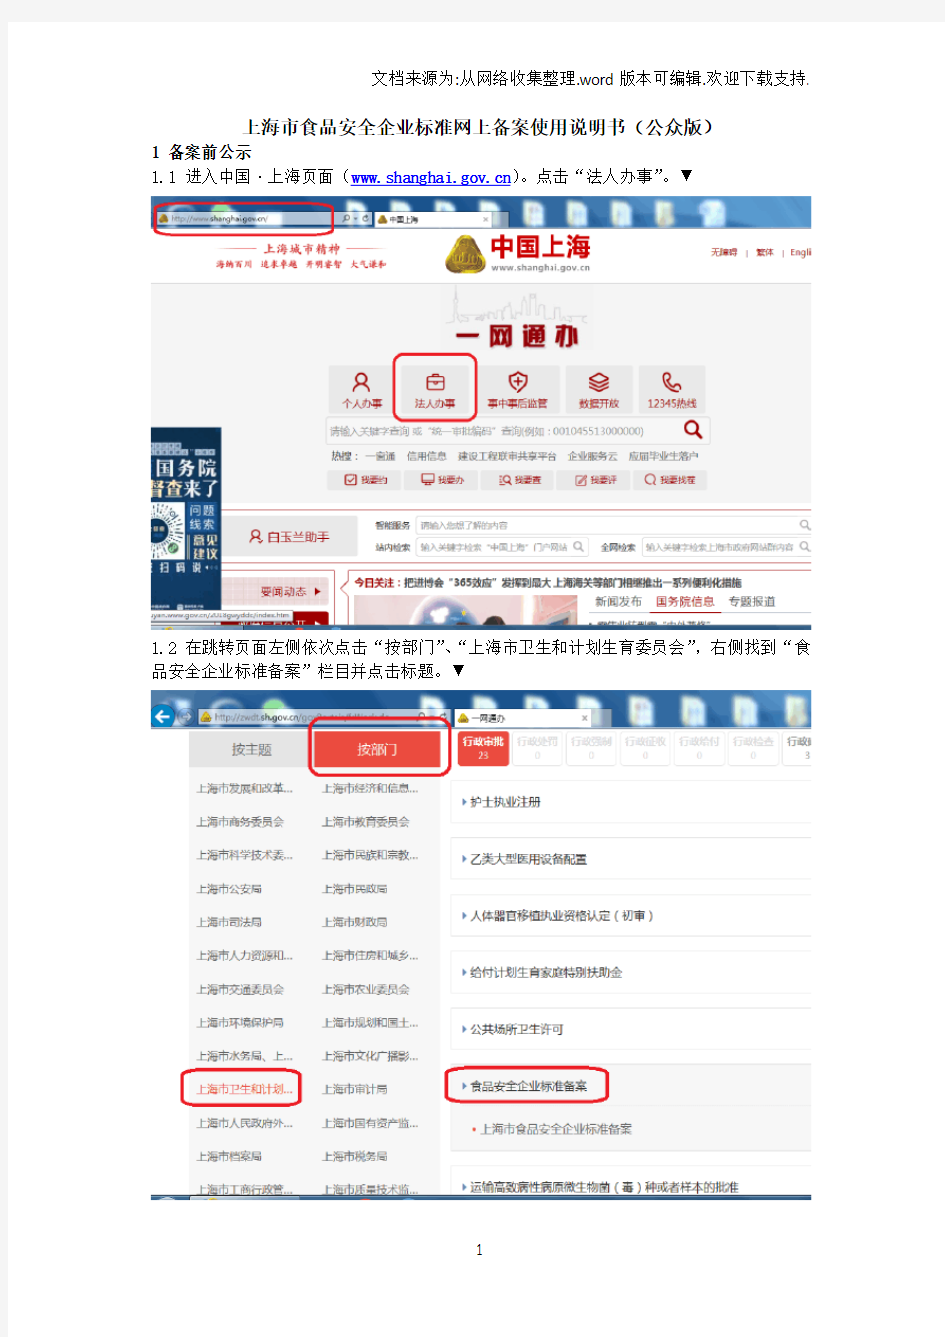 上海市食品安全企业标准网上备案使用说明书公众版